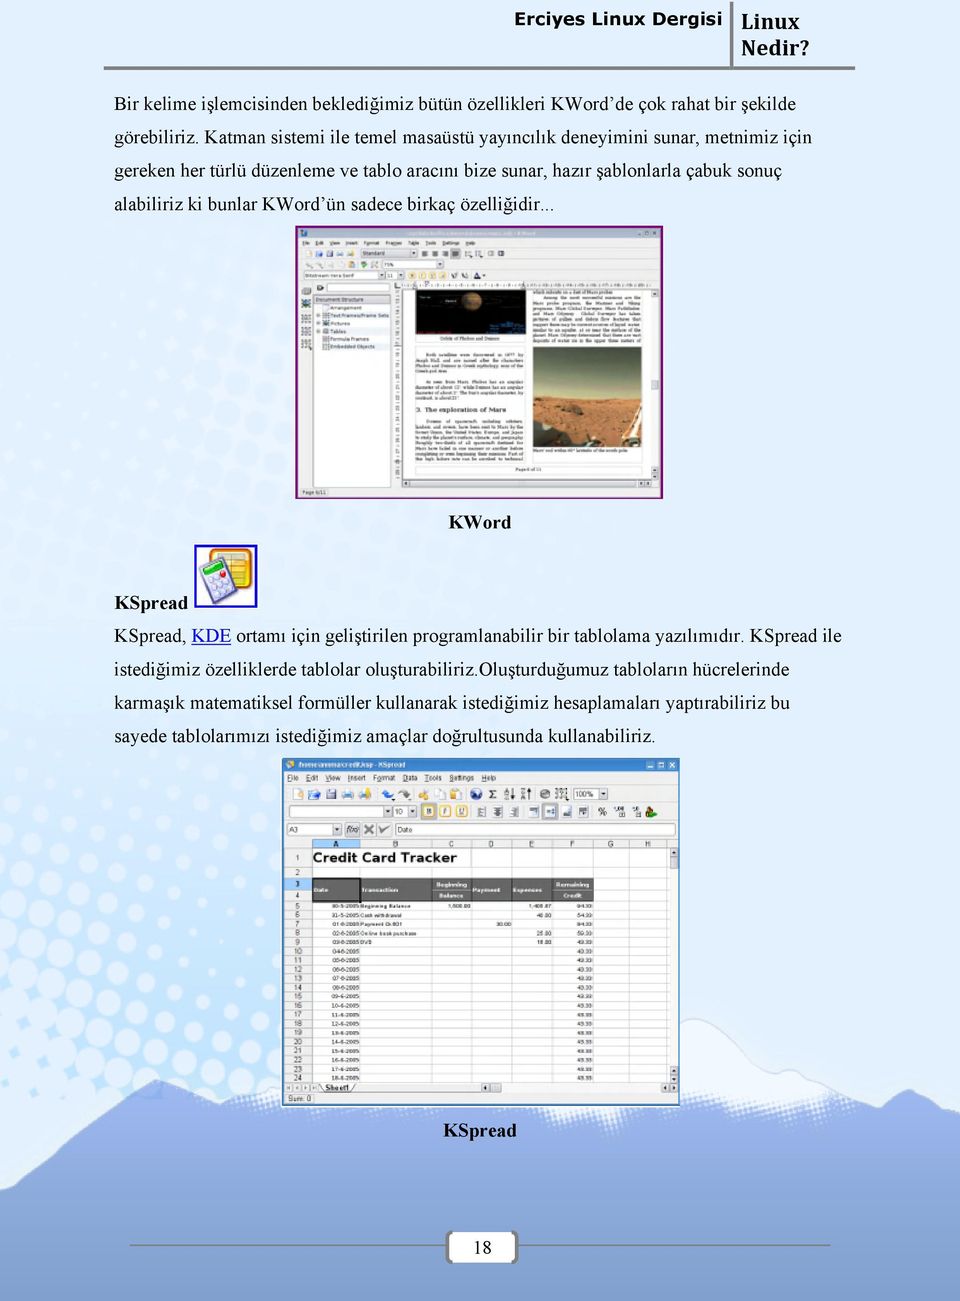 alabiliriz ki bunlar KWord ün sadece birkaç özelliğidir... KWord KSpread KSpread, KDE ortamı için geliştirilen programlanabilir bir tablolama yazılımıdır.